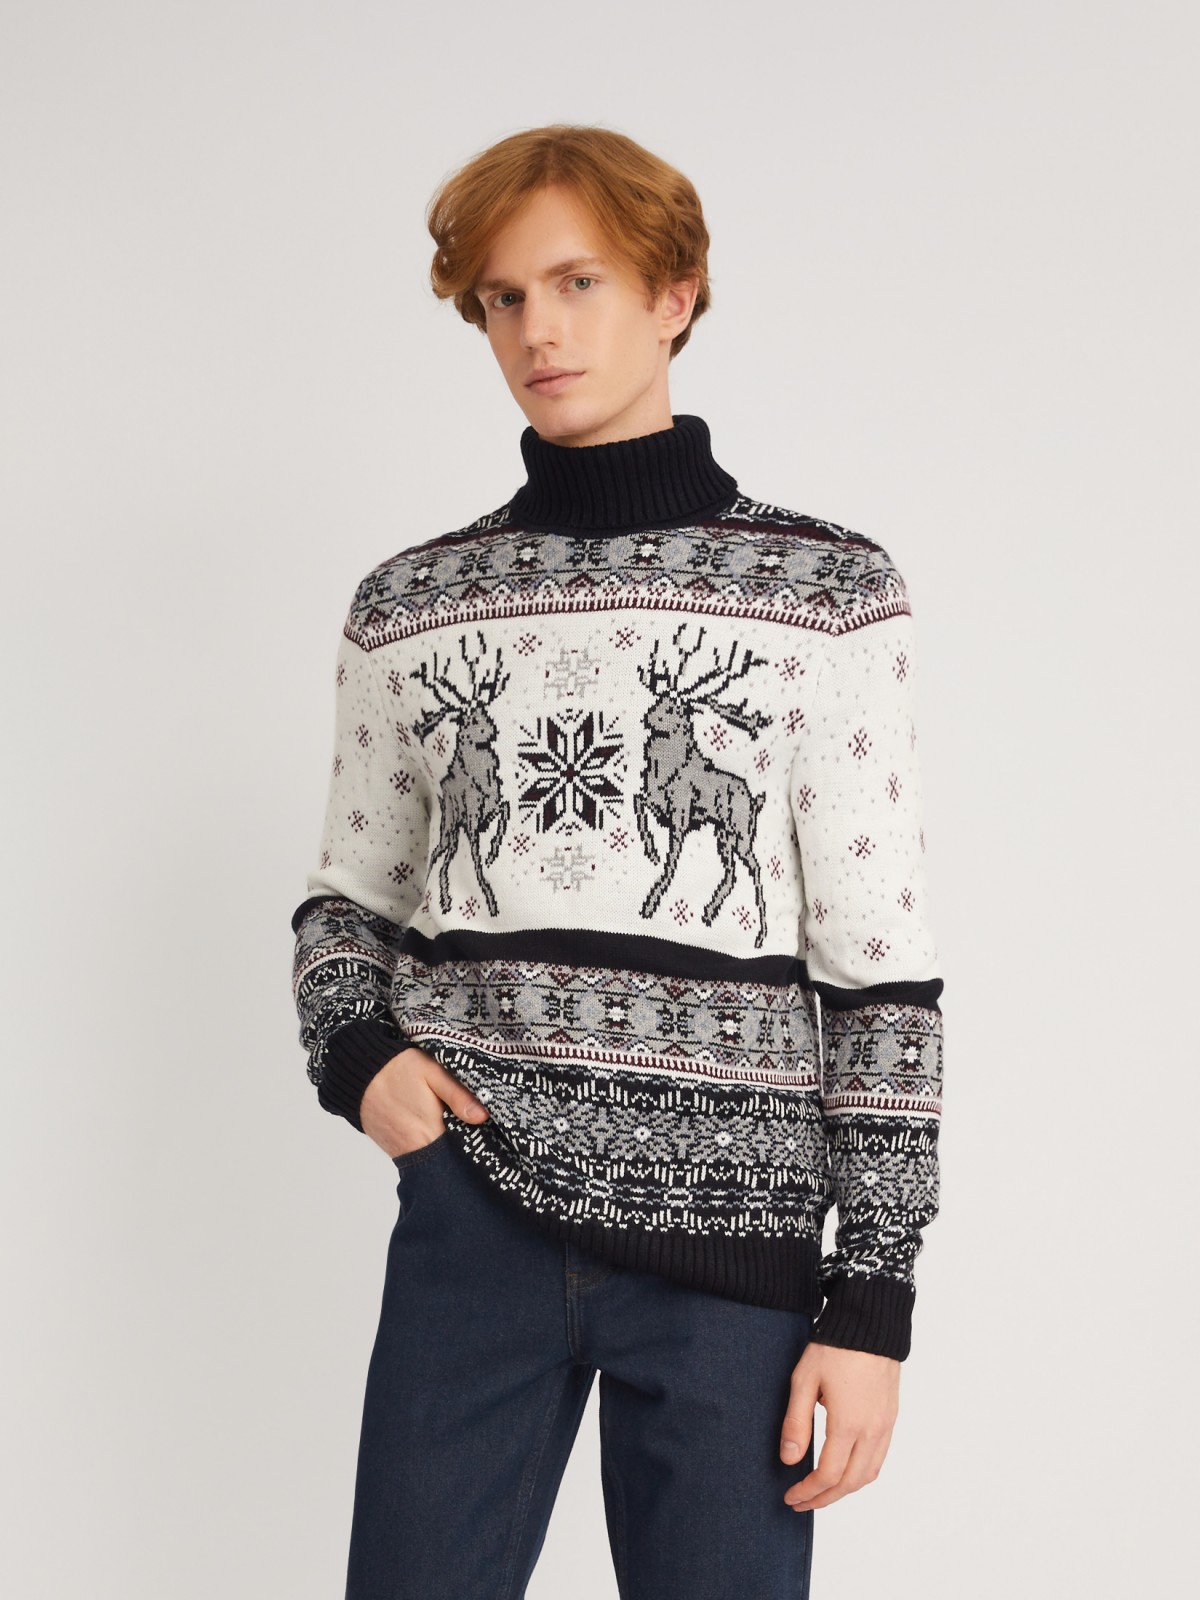 Вязаный свитер из акрила со скандинавским узором с оленями